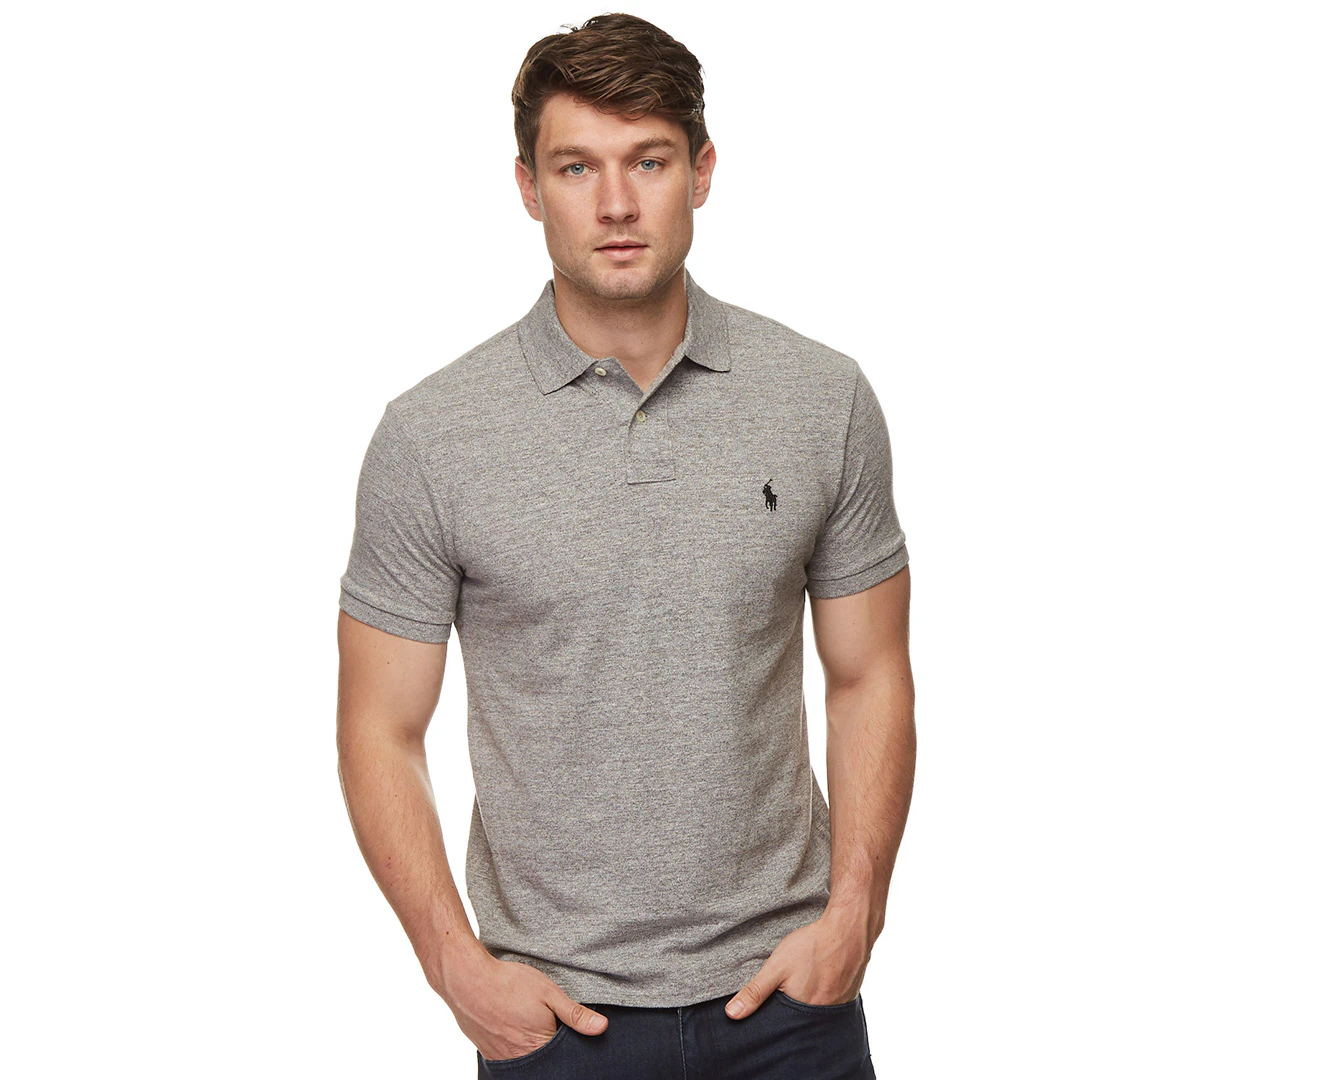 Polo Ralph Lauren polo shirt Short Sleeve-Polo men'swhite color buy on PRM